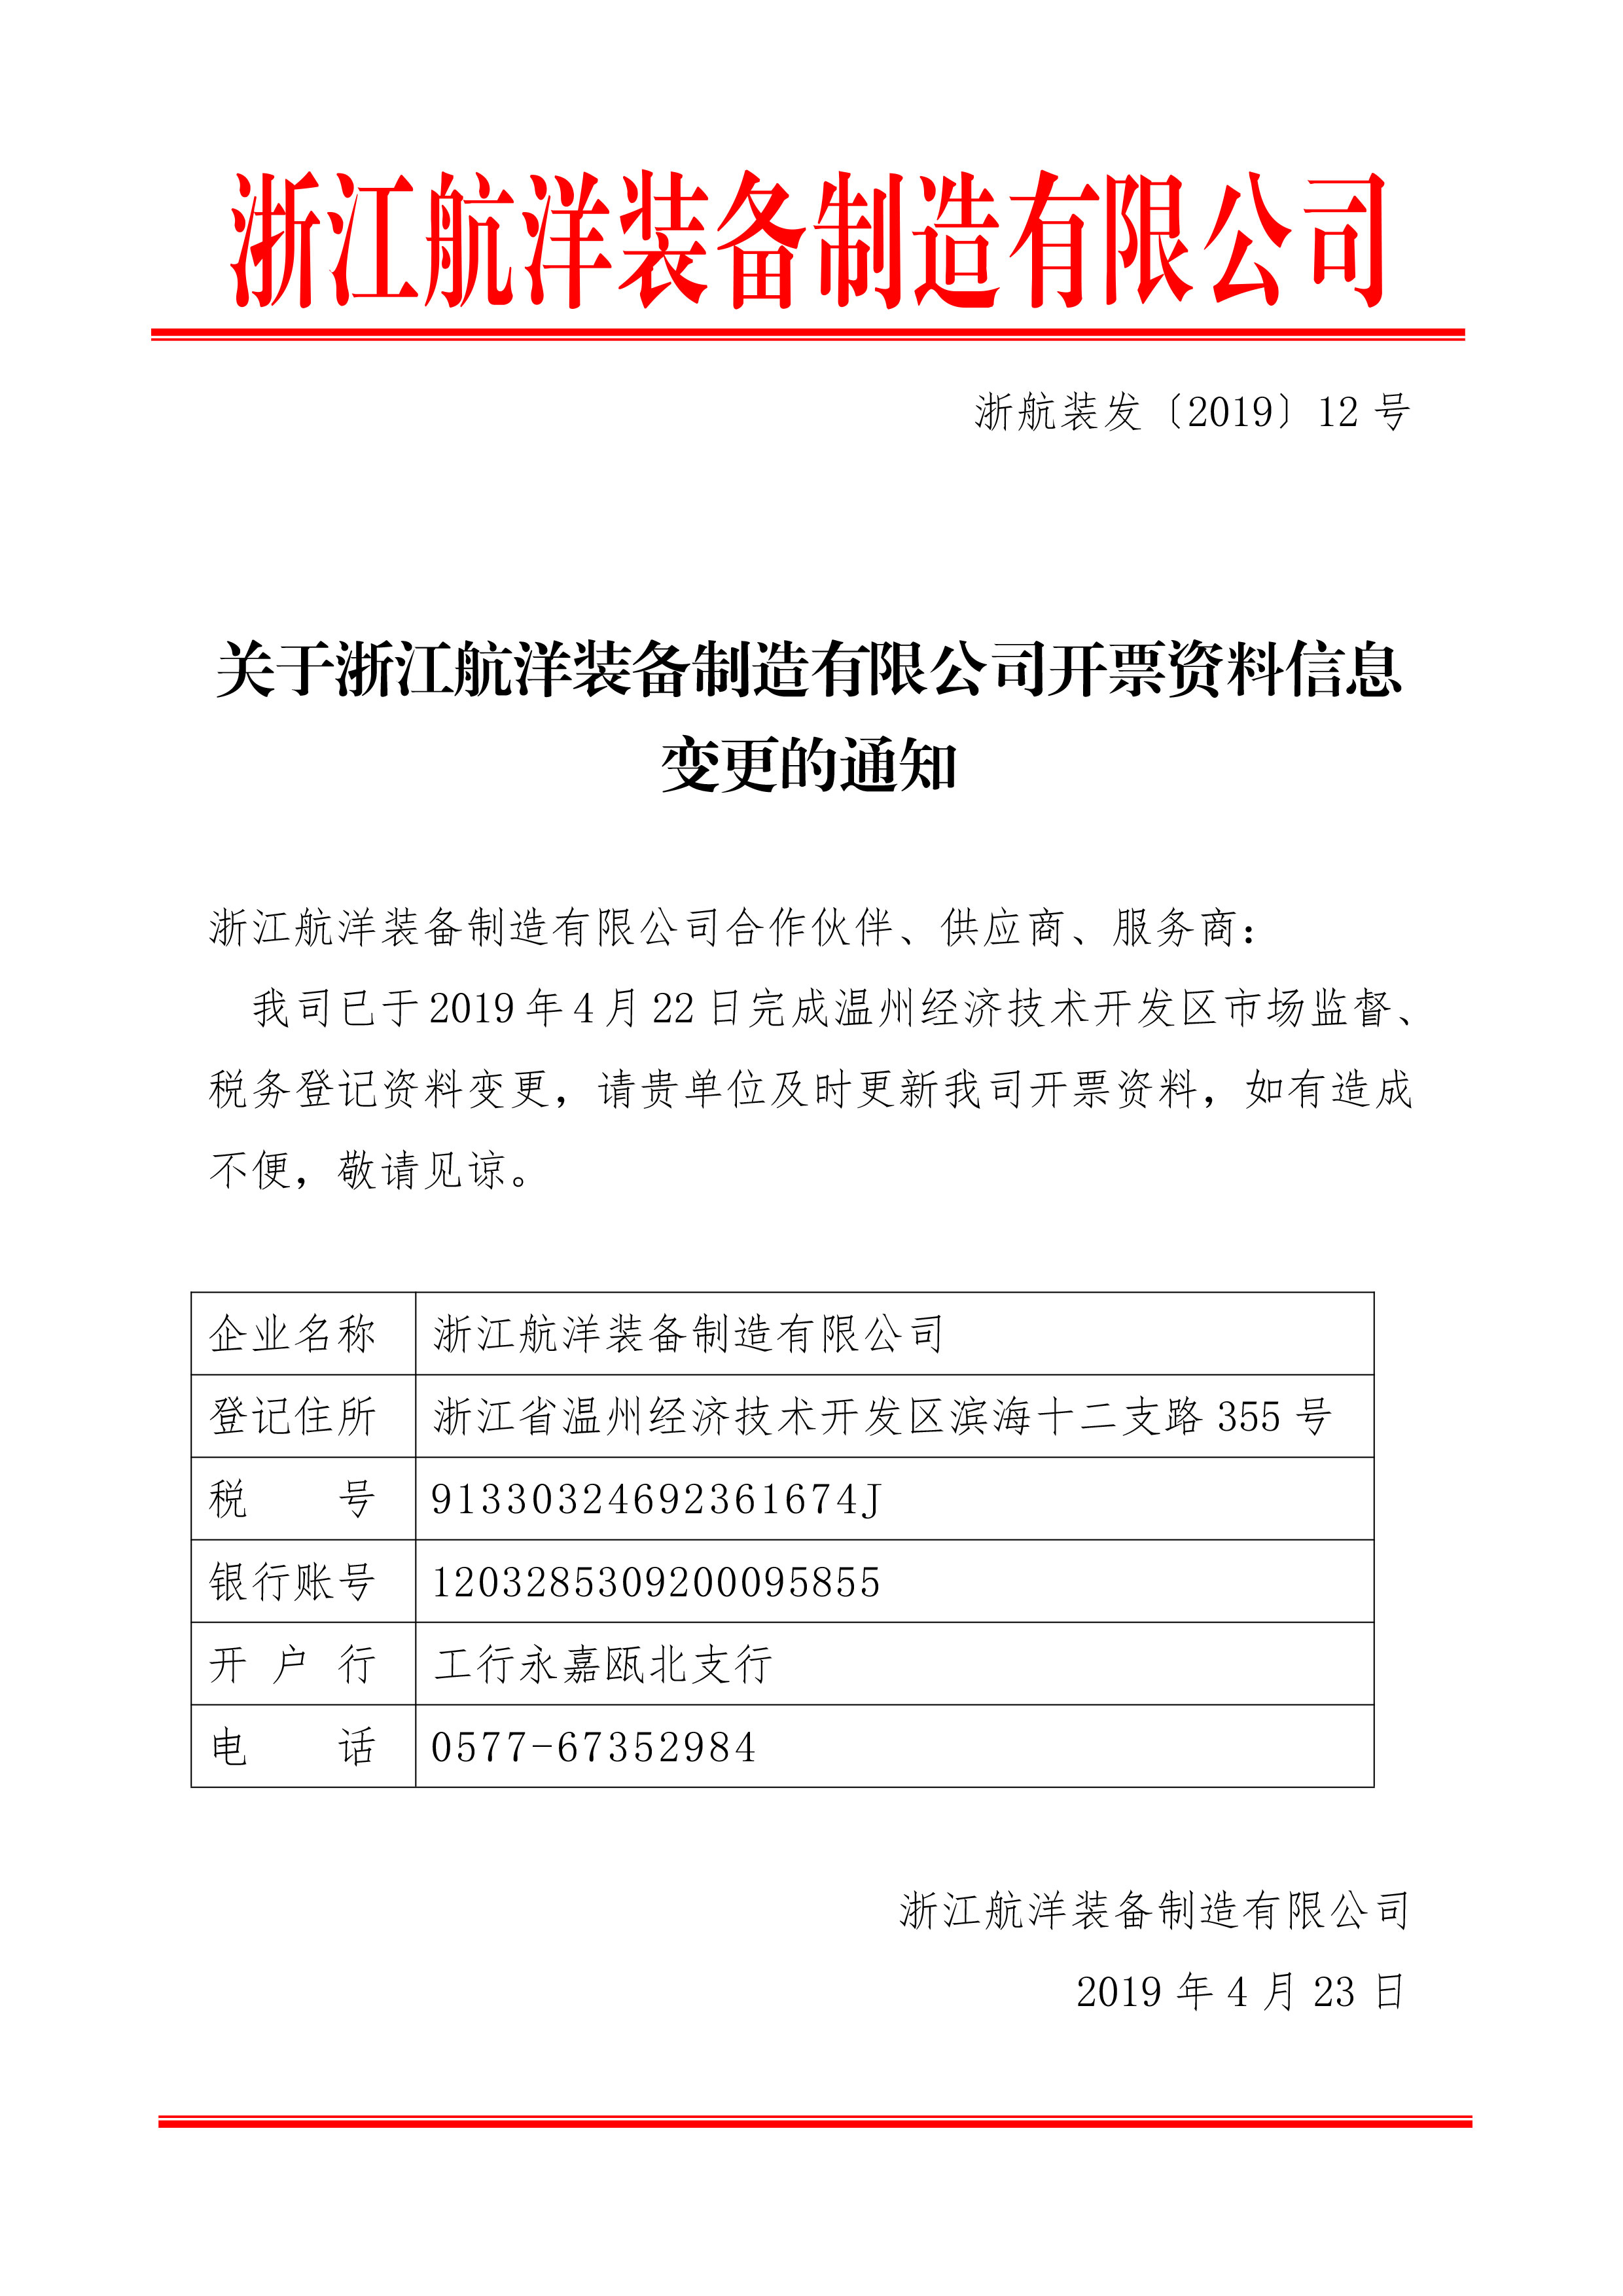 浙江航洋装备制造有限公司登记资料变更公告